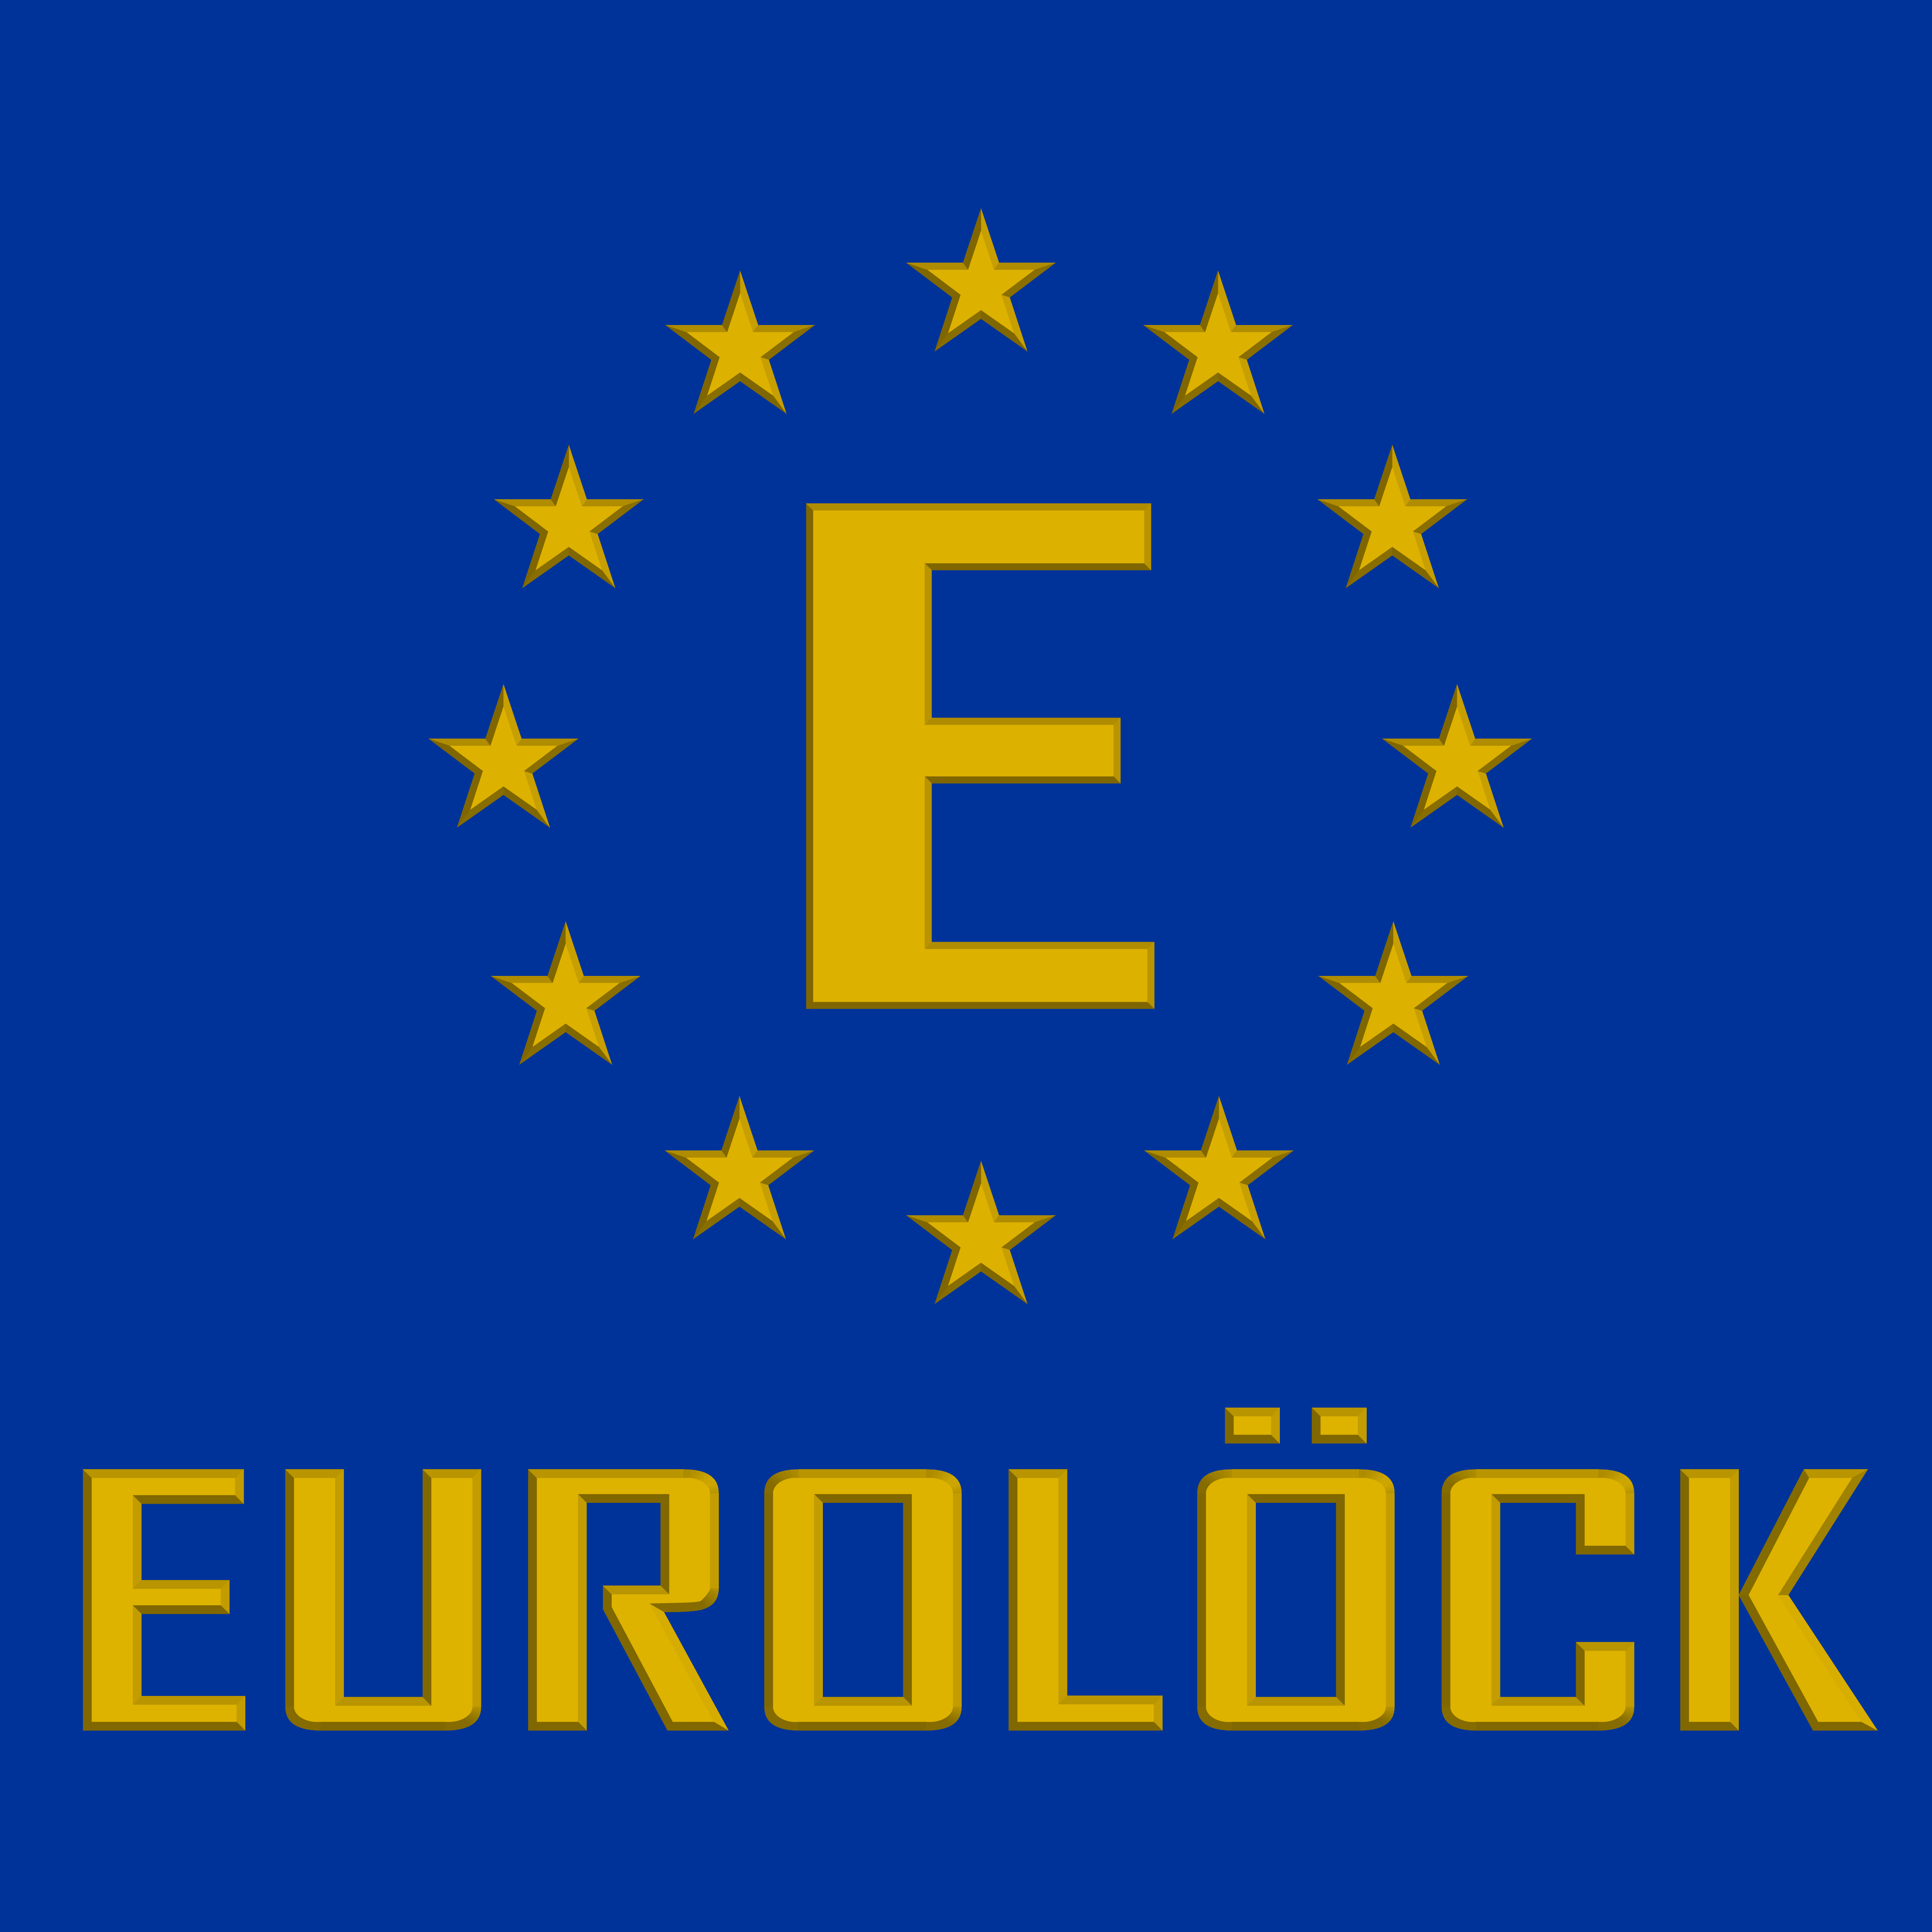 [Review] Khóa cửa vân tay Eurolock S2 có tốt không?